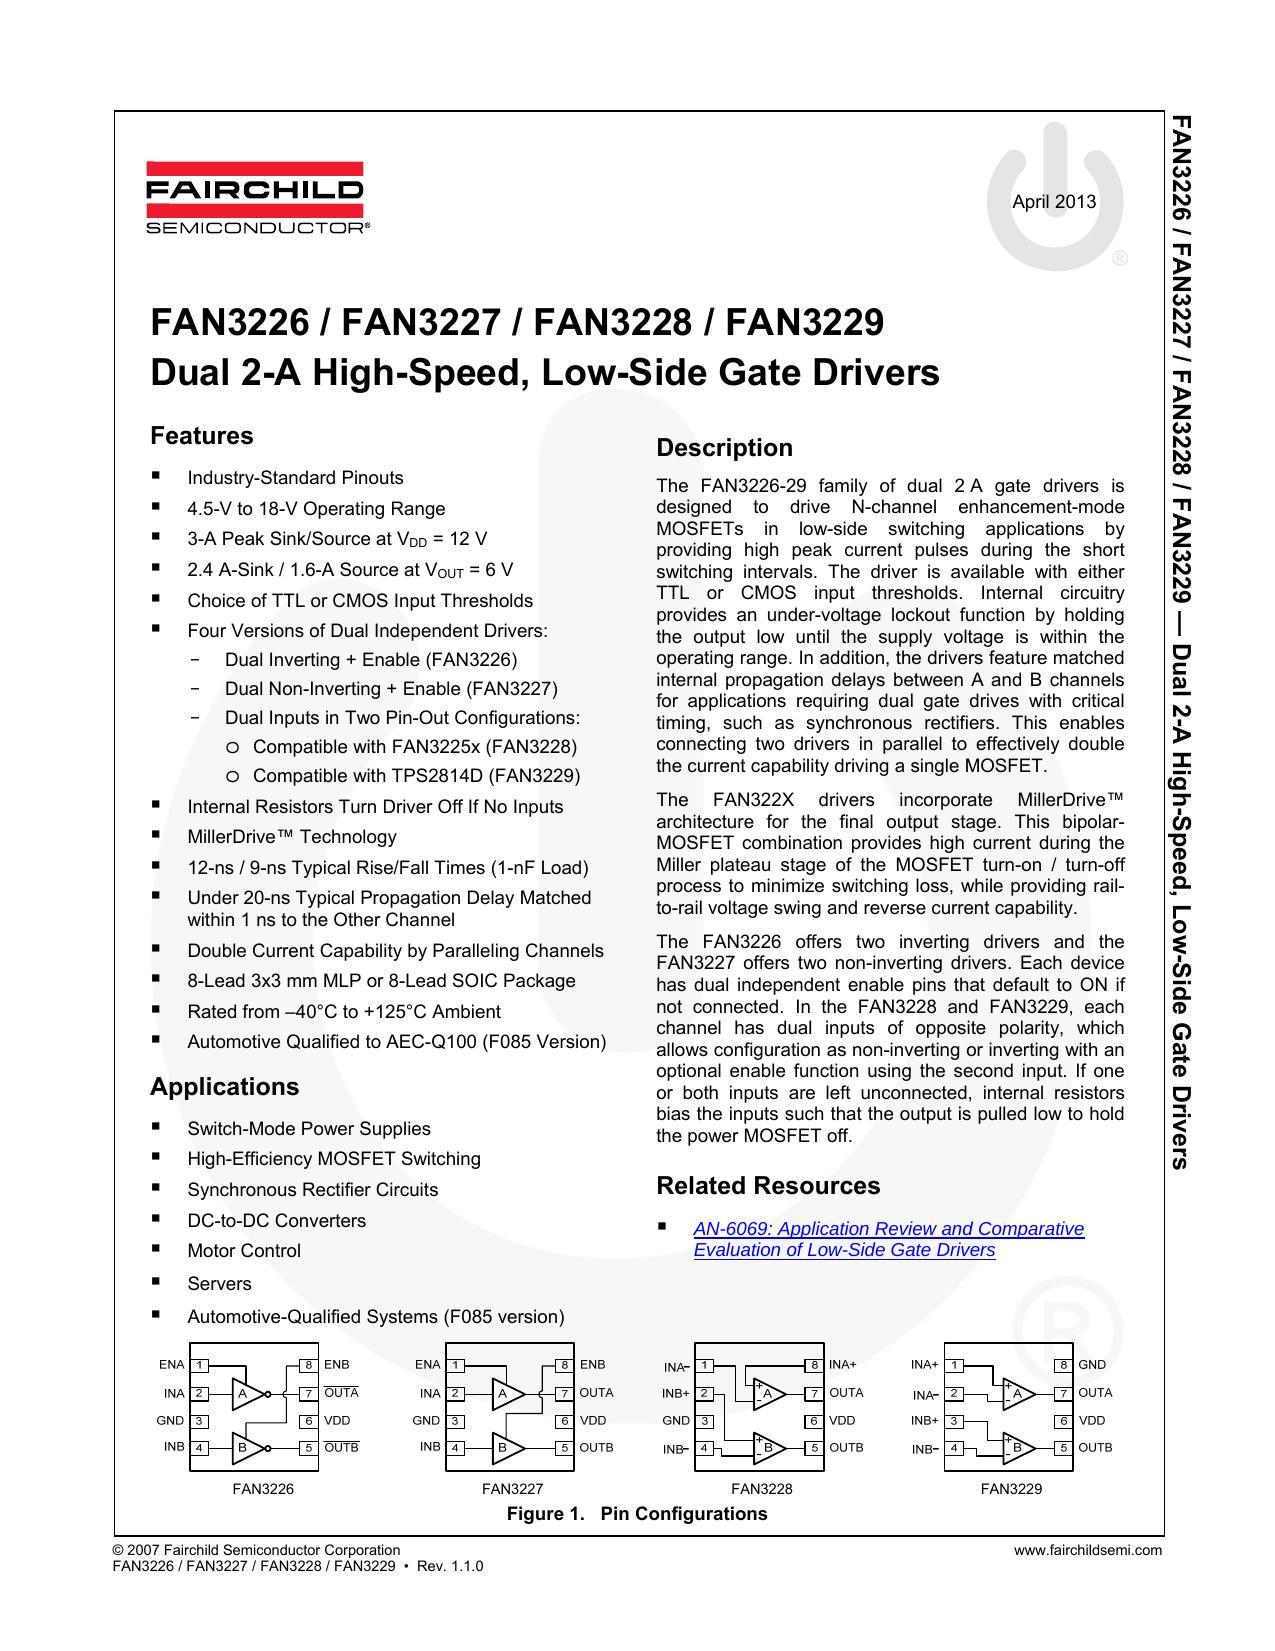 fan3226-fan3227-fan3228-fan3229-dual-2-a-high-speed-low-side-gate-drivers.pdf